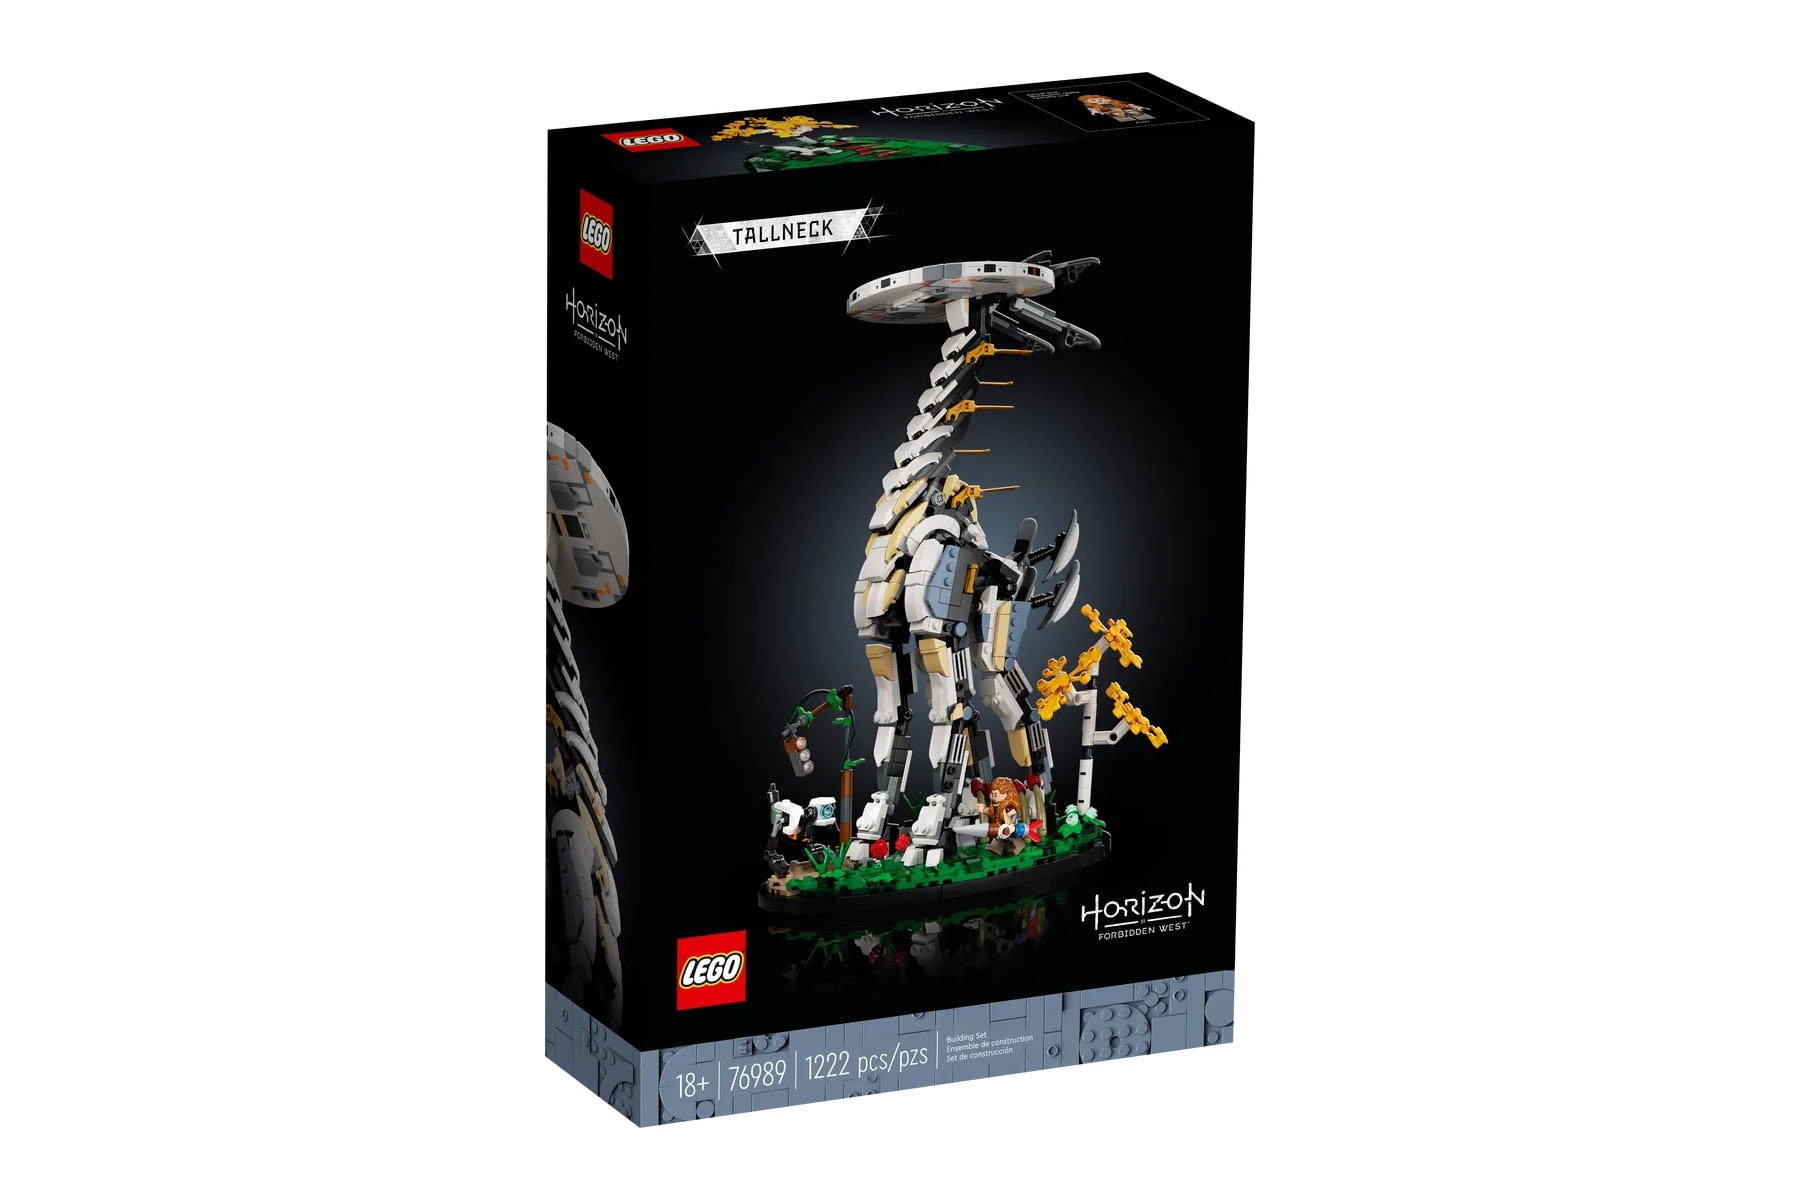 LEGO 即將推出《地平線 Horizon Forbidden West》「長頸獸 Tallneck」積木模型